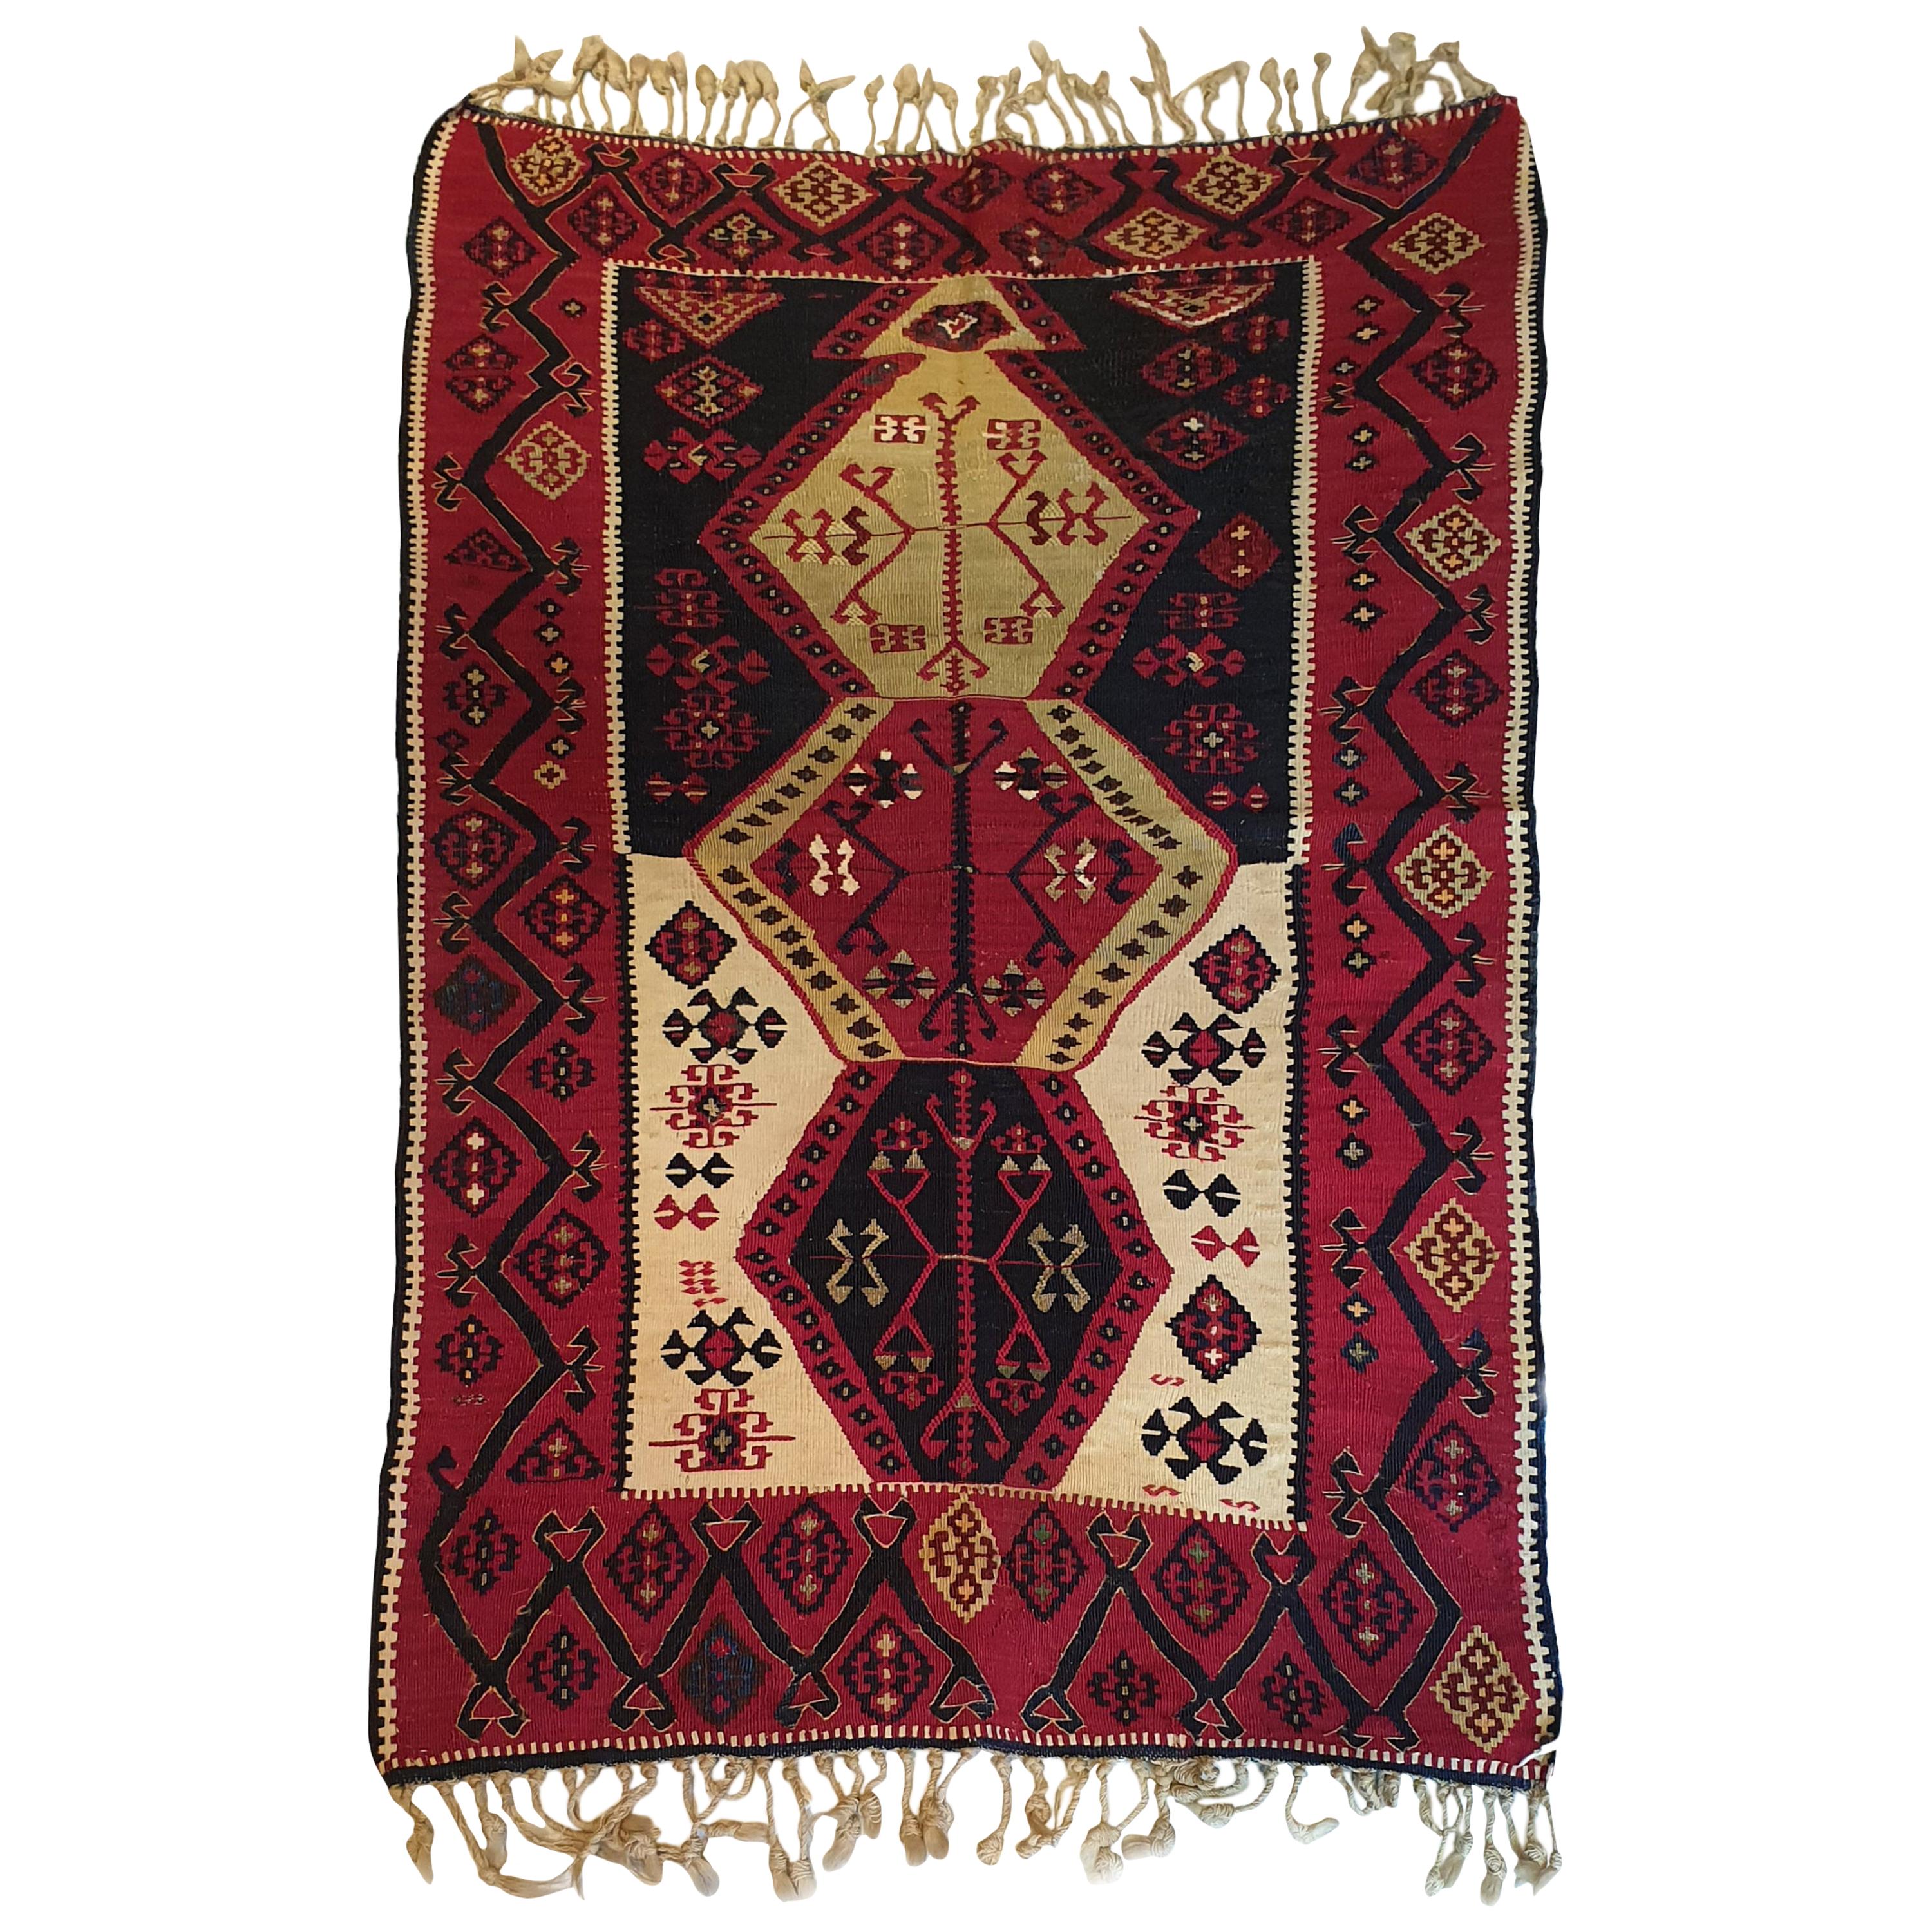 700 - 19th Century Kilim from Turkey 'Reyhanli' For Sale